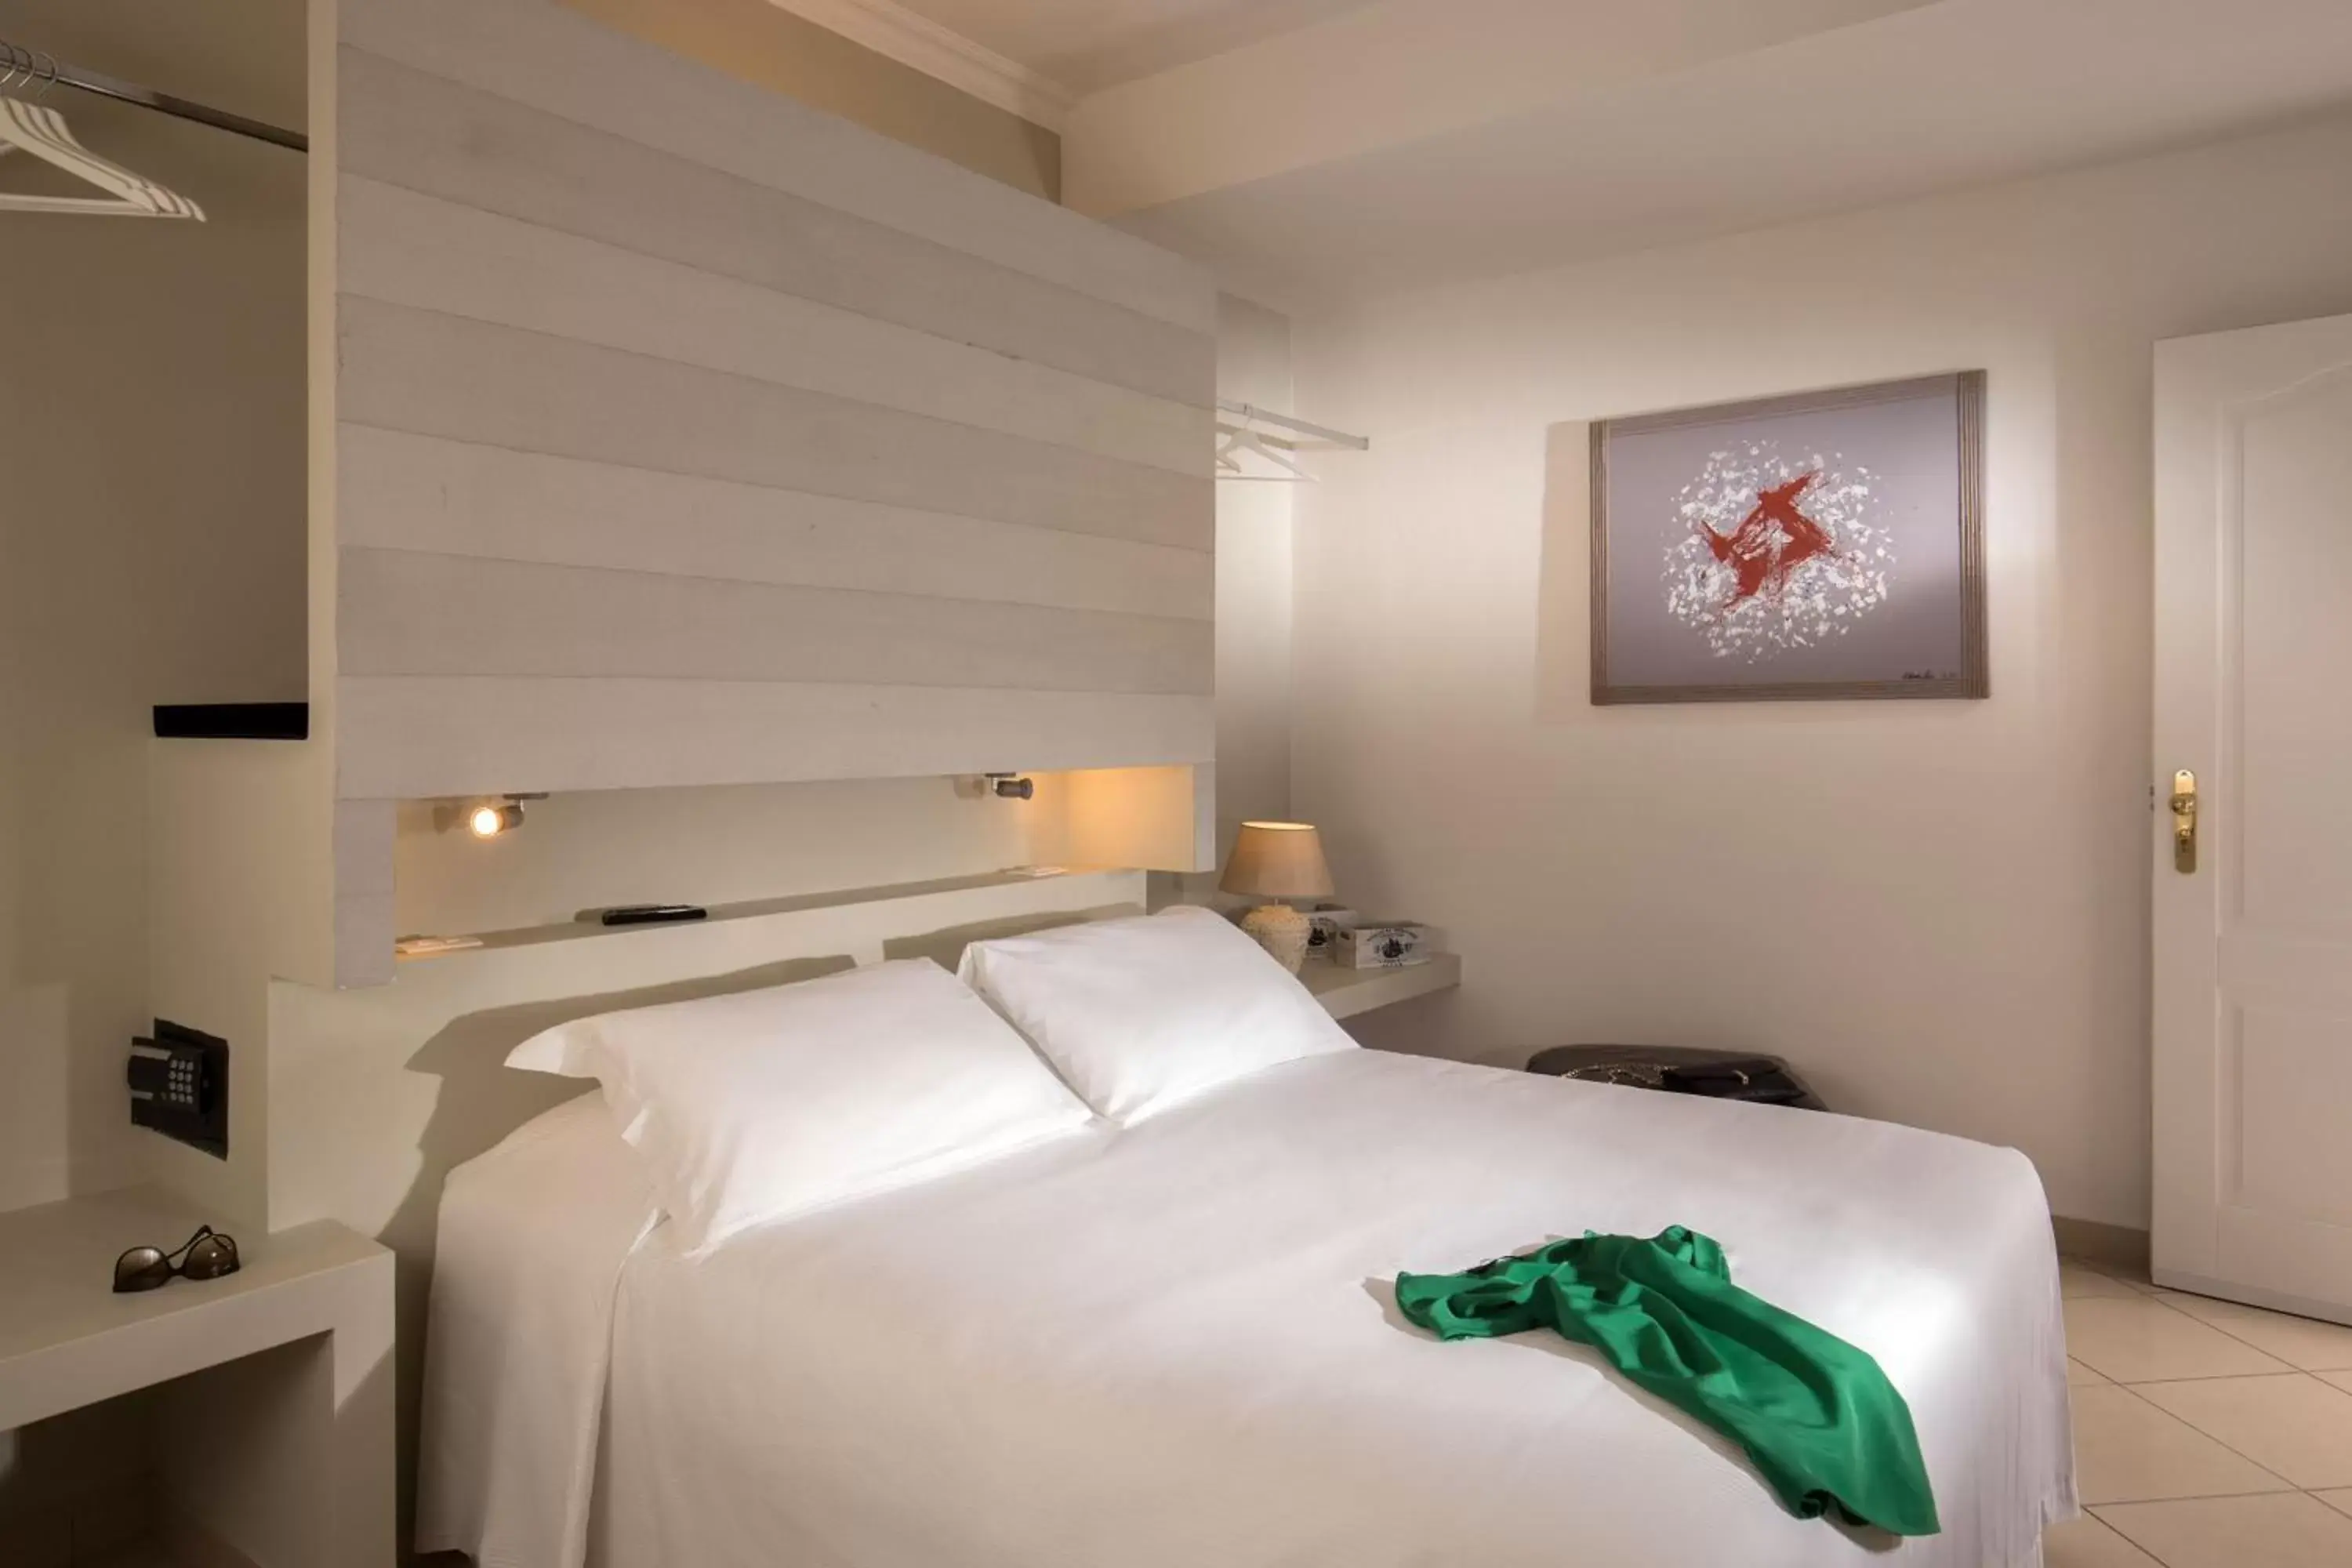 Bedroom, Bed in Crossroad Hotel